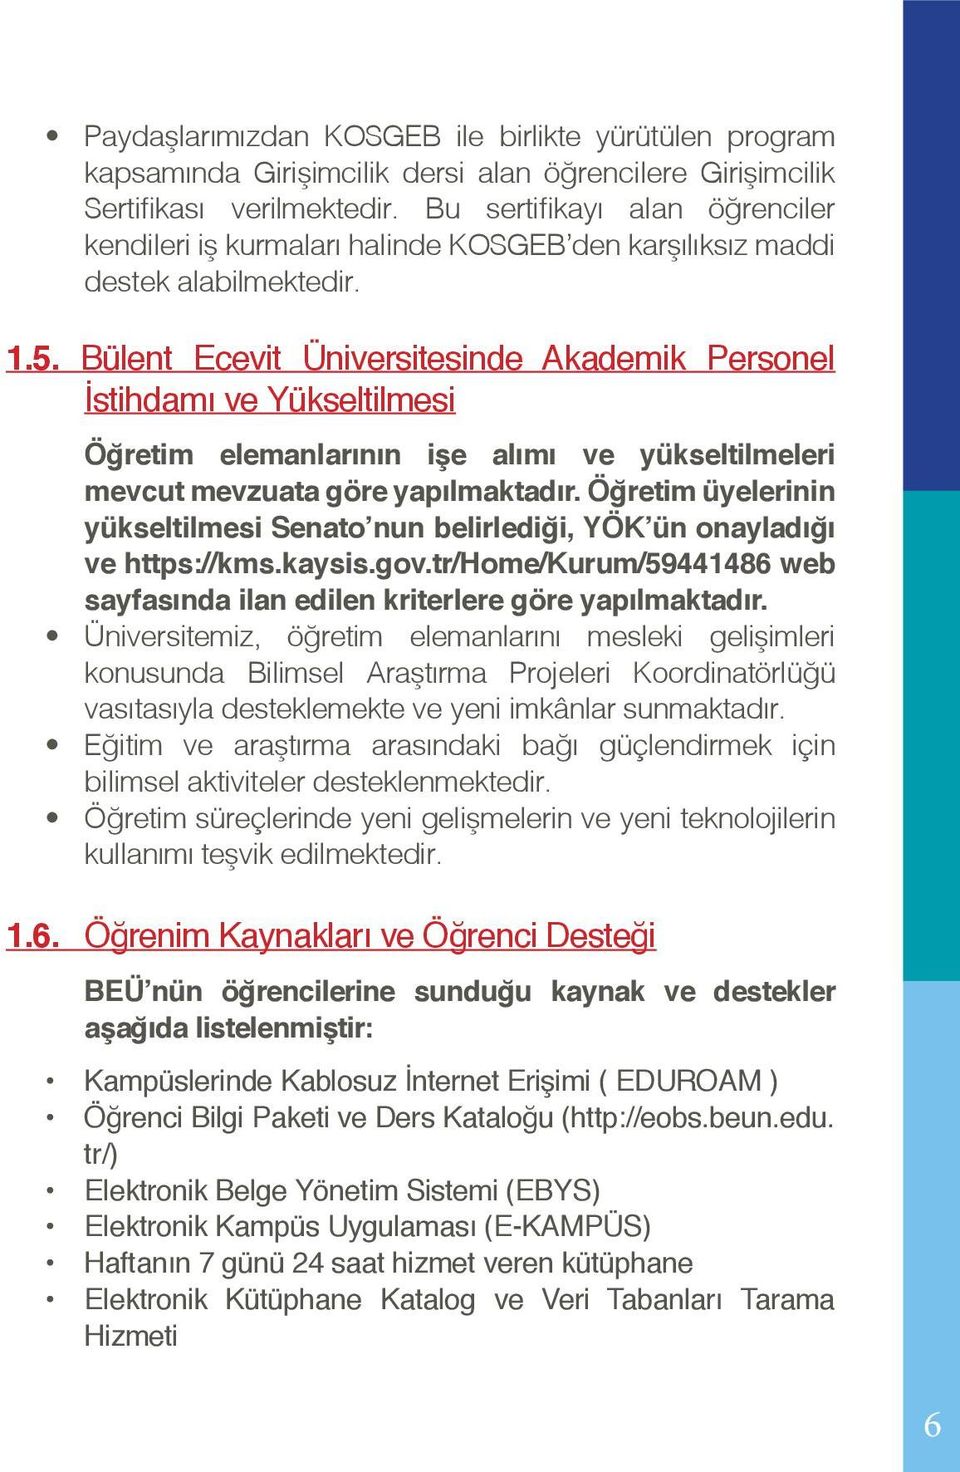 Bülent Ecevit Üniversitesinde Akademik Personel İstihdamı ve Yükseltilmesi Öğretim elemanlarının işe alımı ve yükseltilmeleri mevcut mevzuata göre yapılmaktadır.